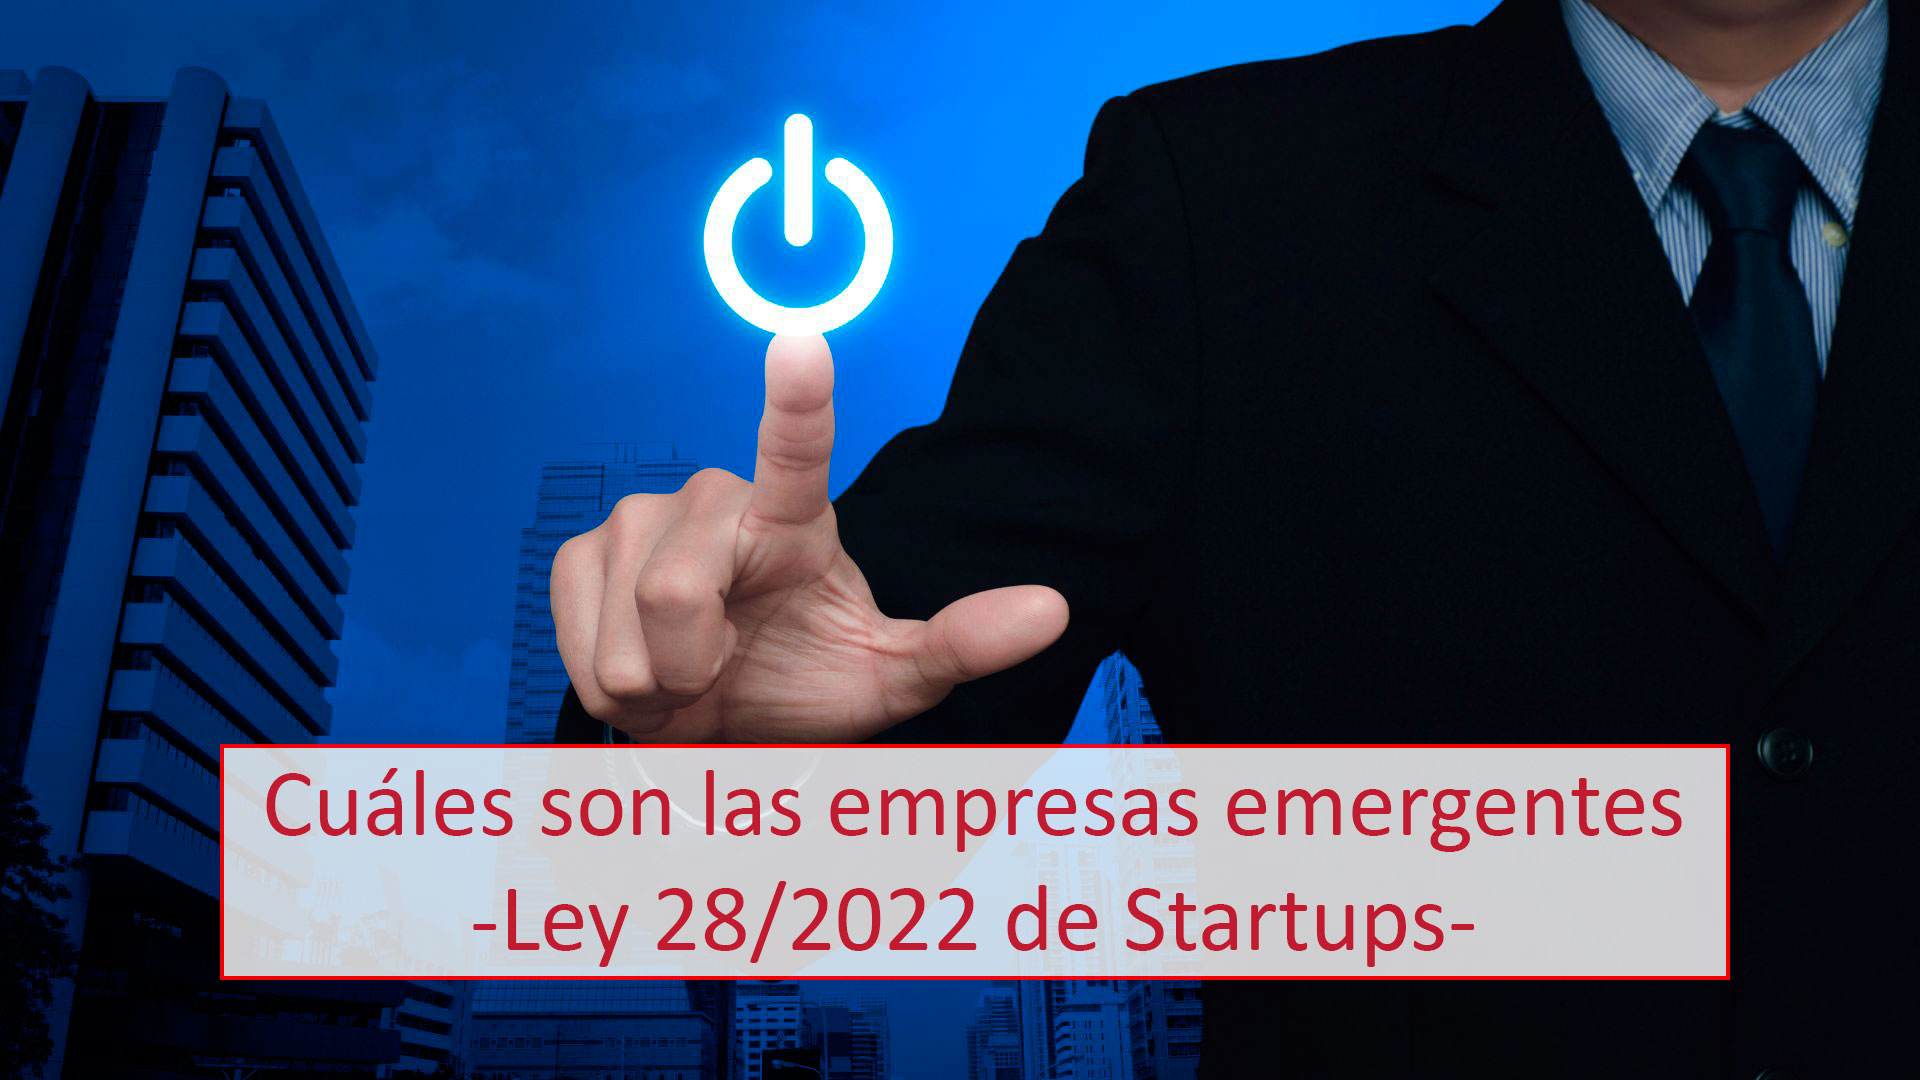 Cuáles son las empresas emergentes -Ley 28/2022 de Startups-